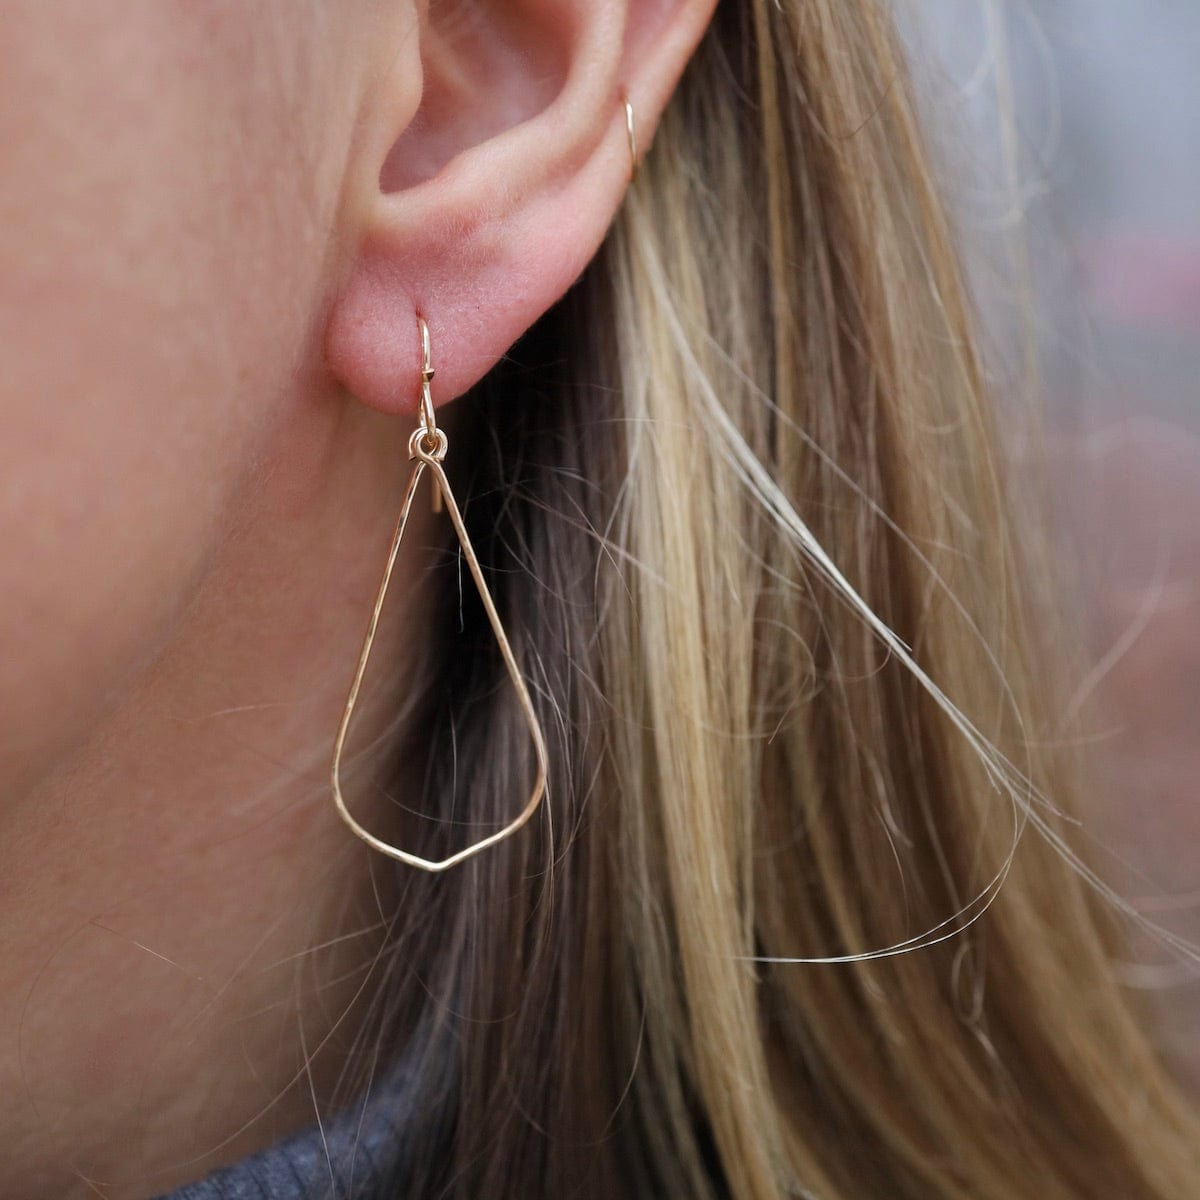 EAR-GF Gold Filled Hammered Wire Teardrop Earrings